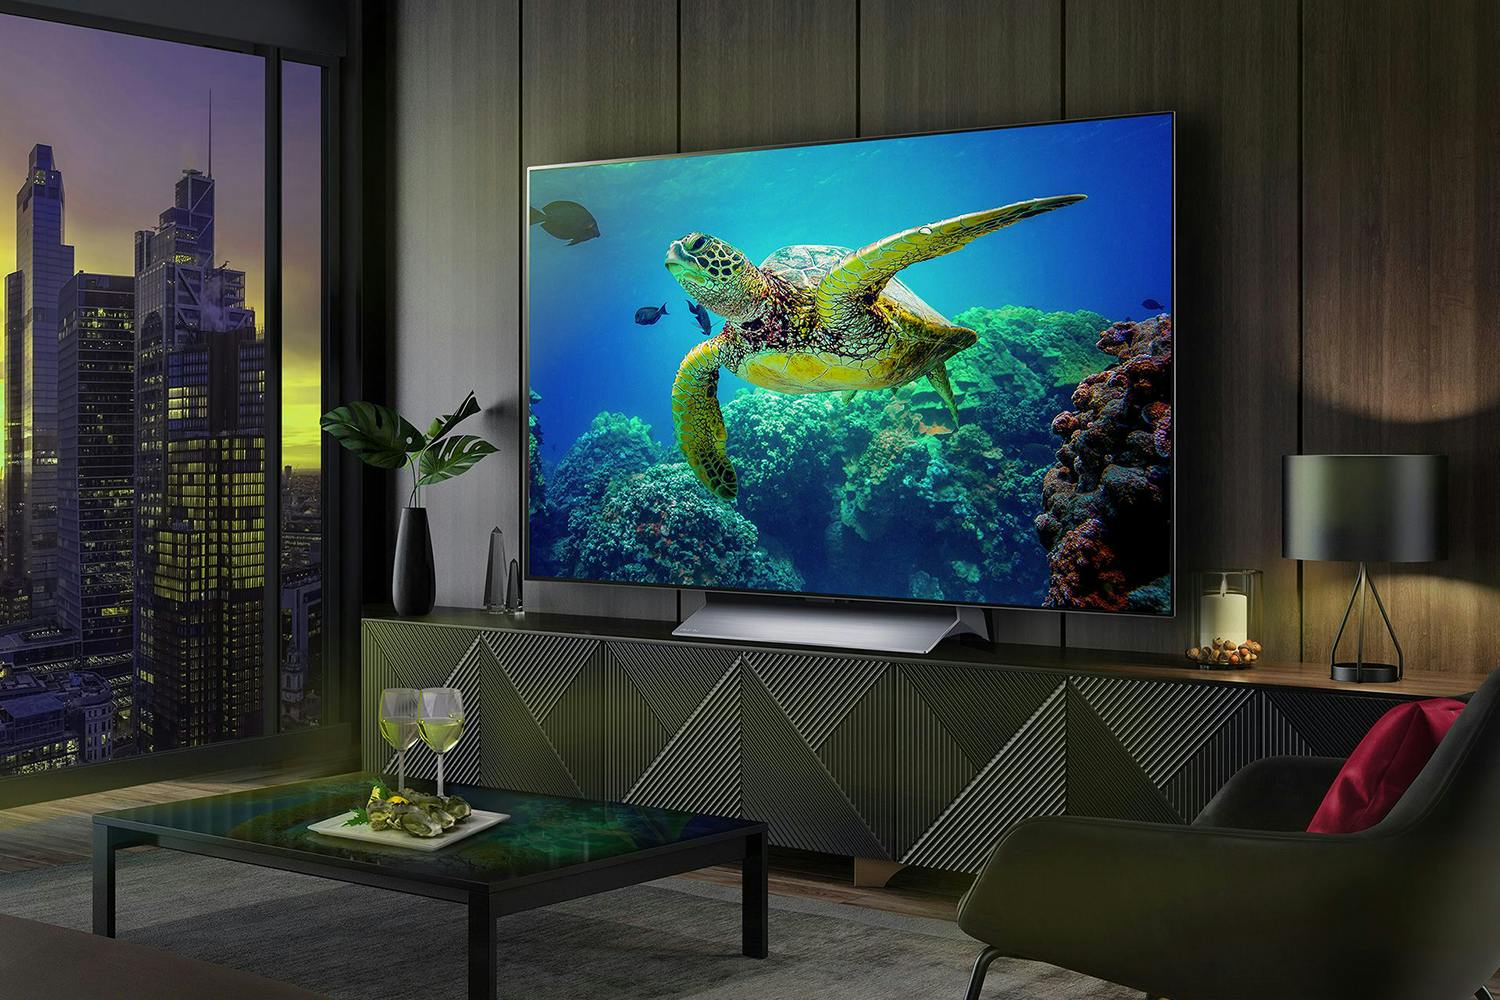 LG 65" C3 OLED EVO 4K Smart TV | OLED65C34LA.AEK